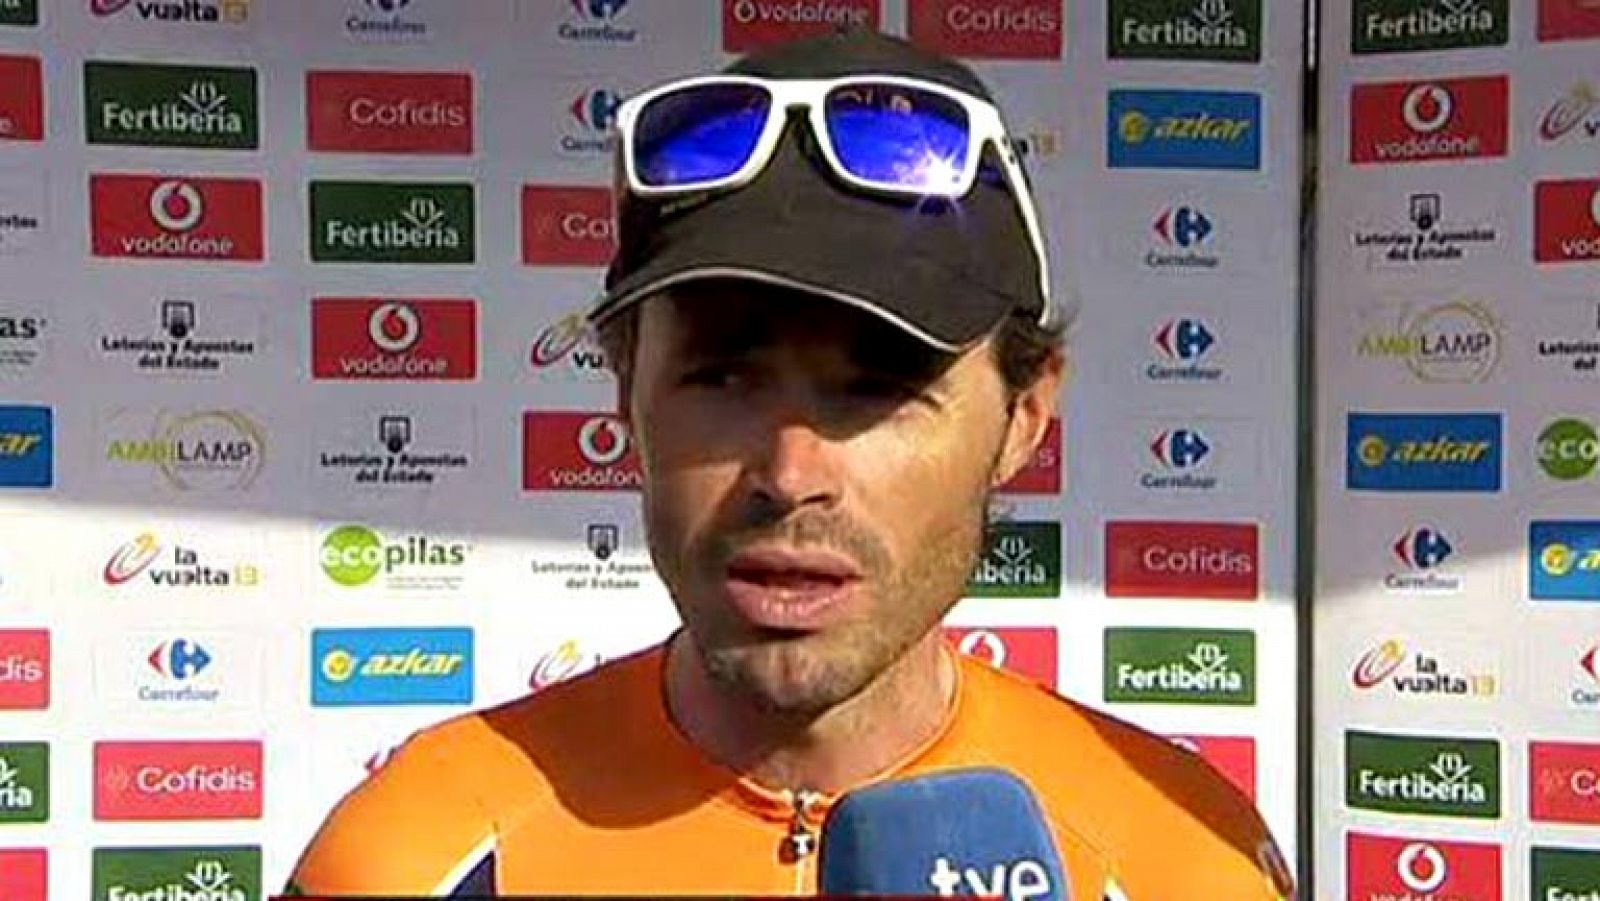 El ciclista asturiano ha vivido con pena la última etapa con el maillot del Euskaltel. Ahora toca pensar en el nuevo proyecto que llega de la mano de su amigo Fernando Alonso.